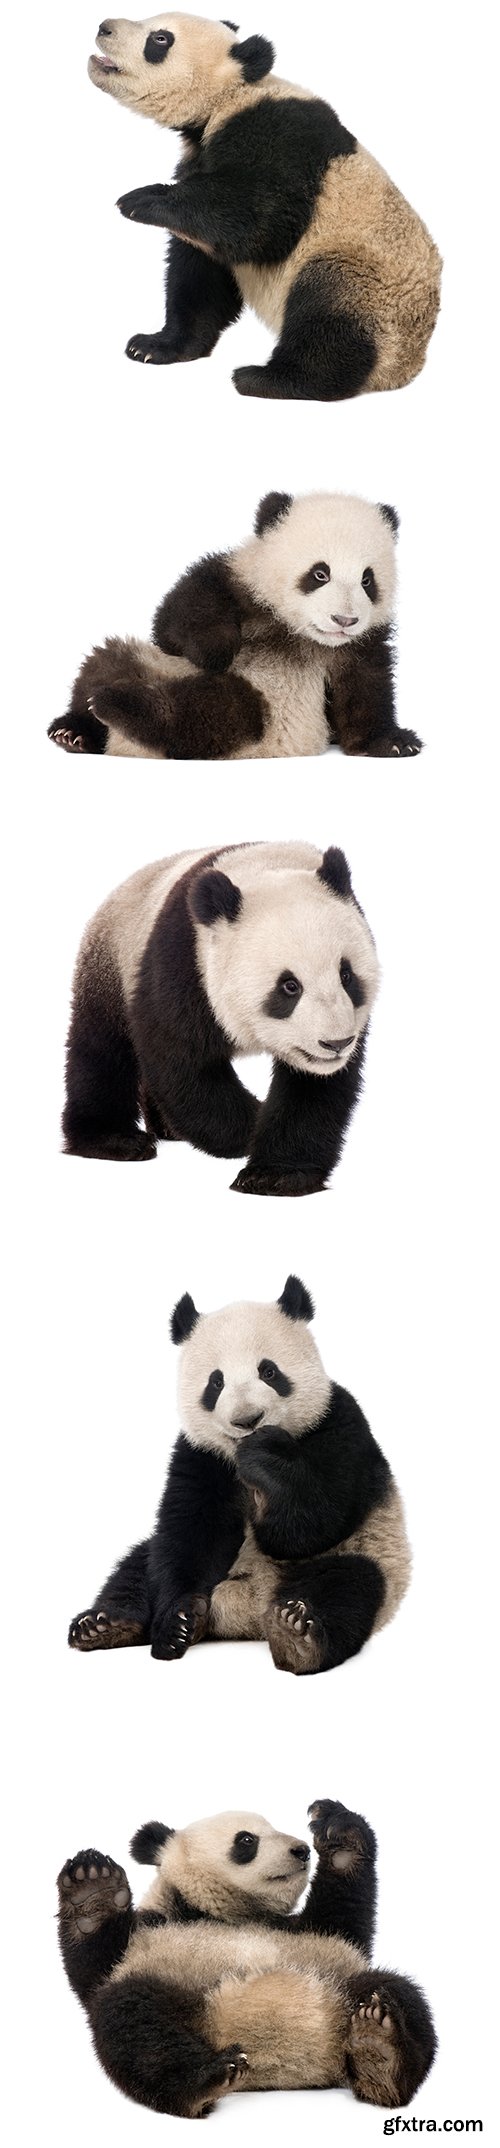 Giant Panda Isolated - 15xJPGs